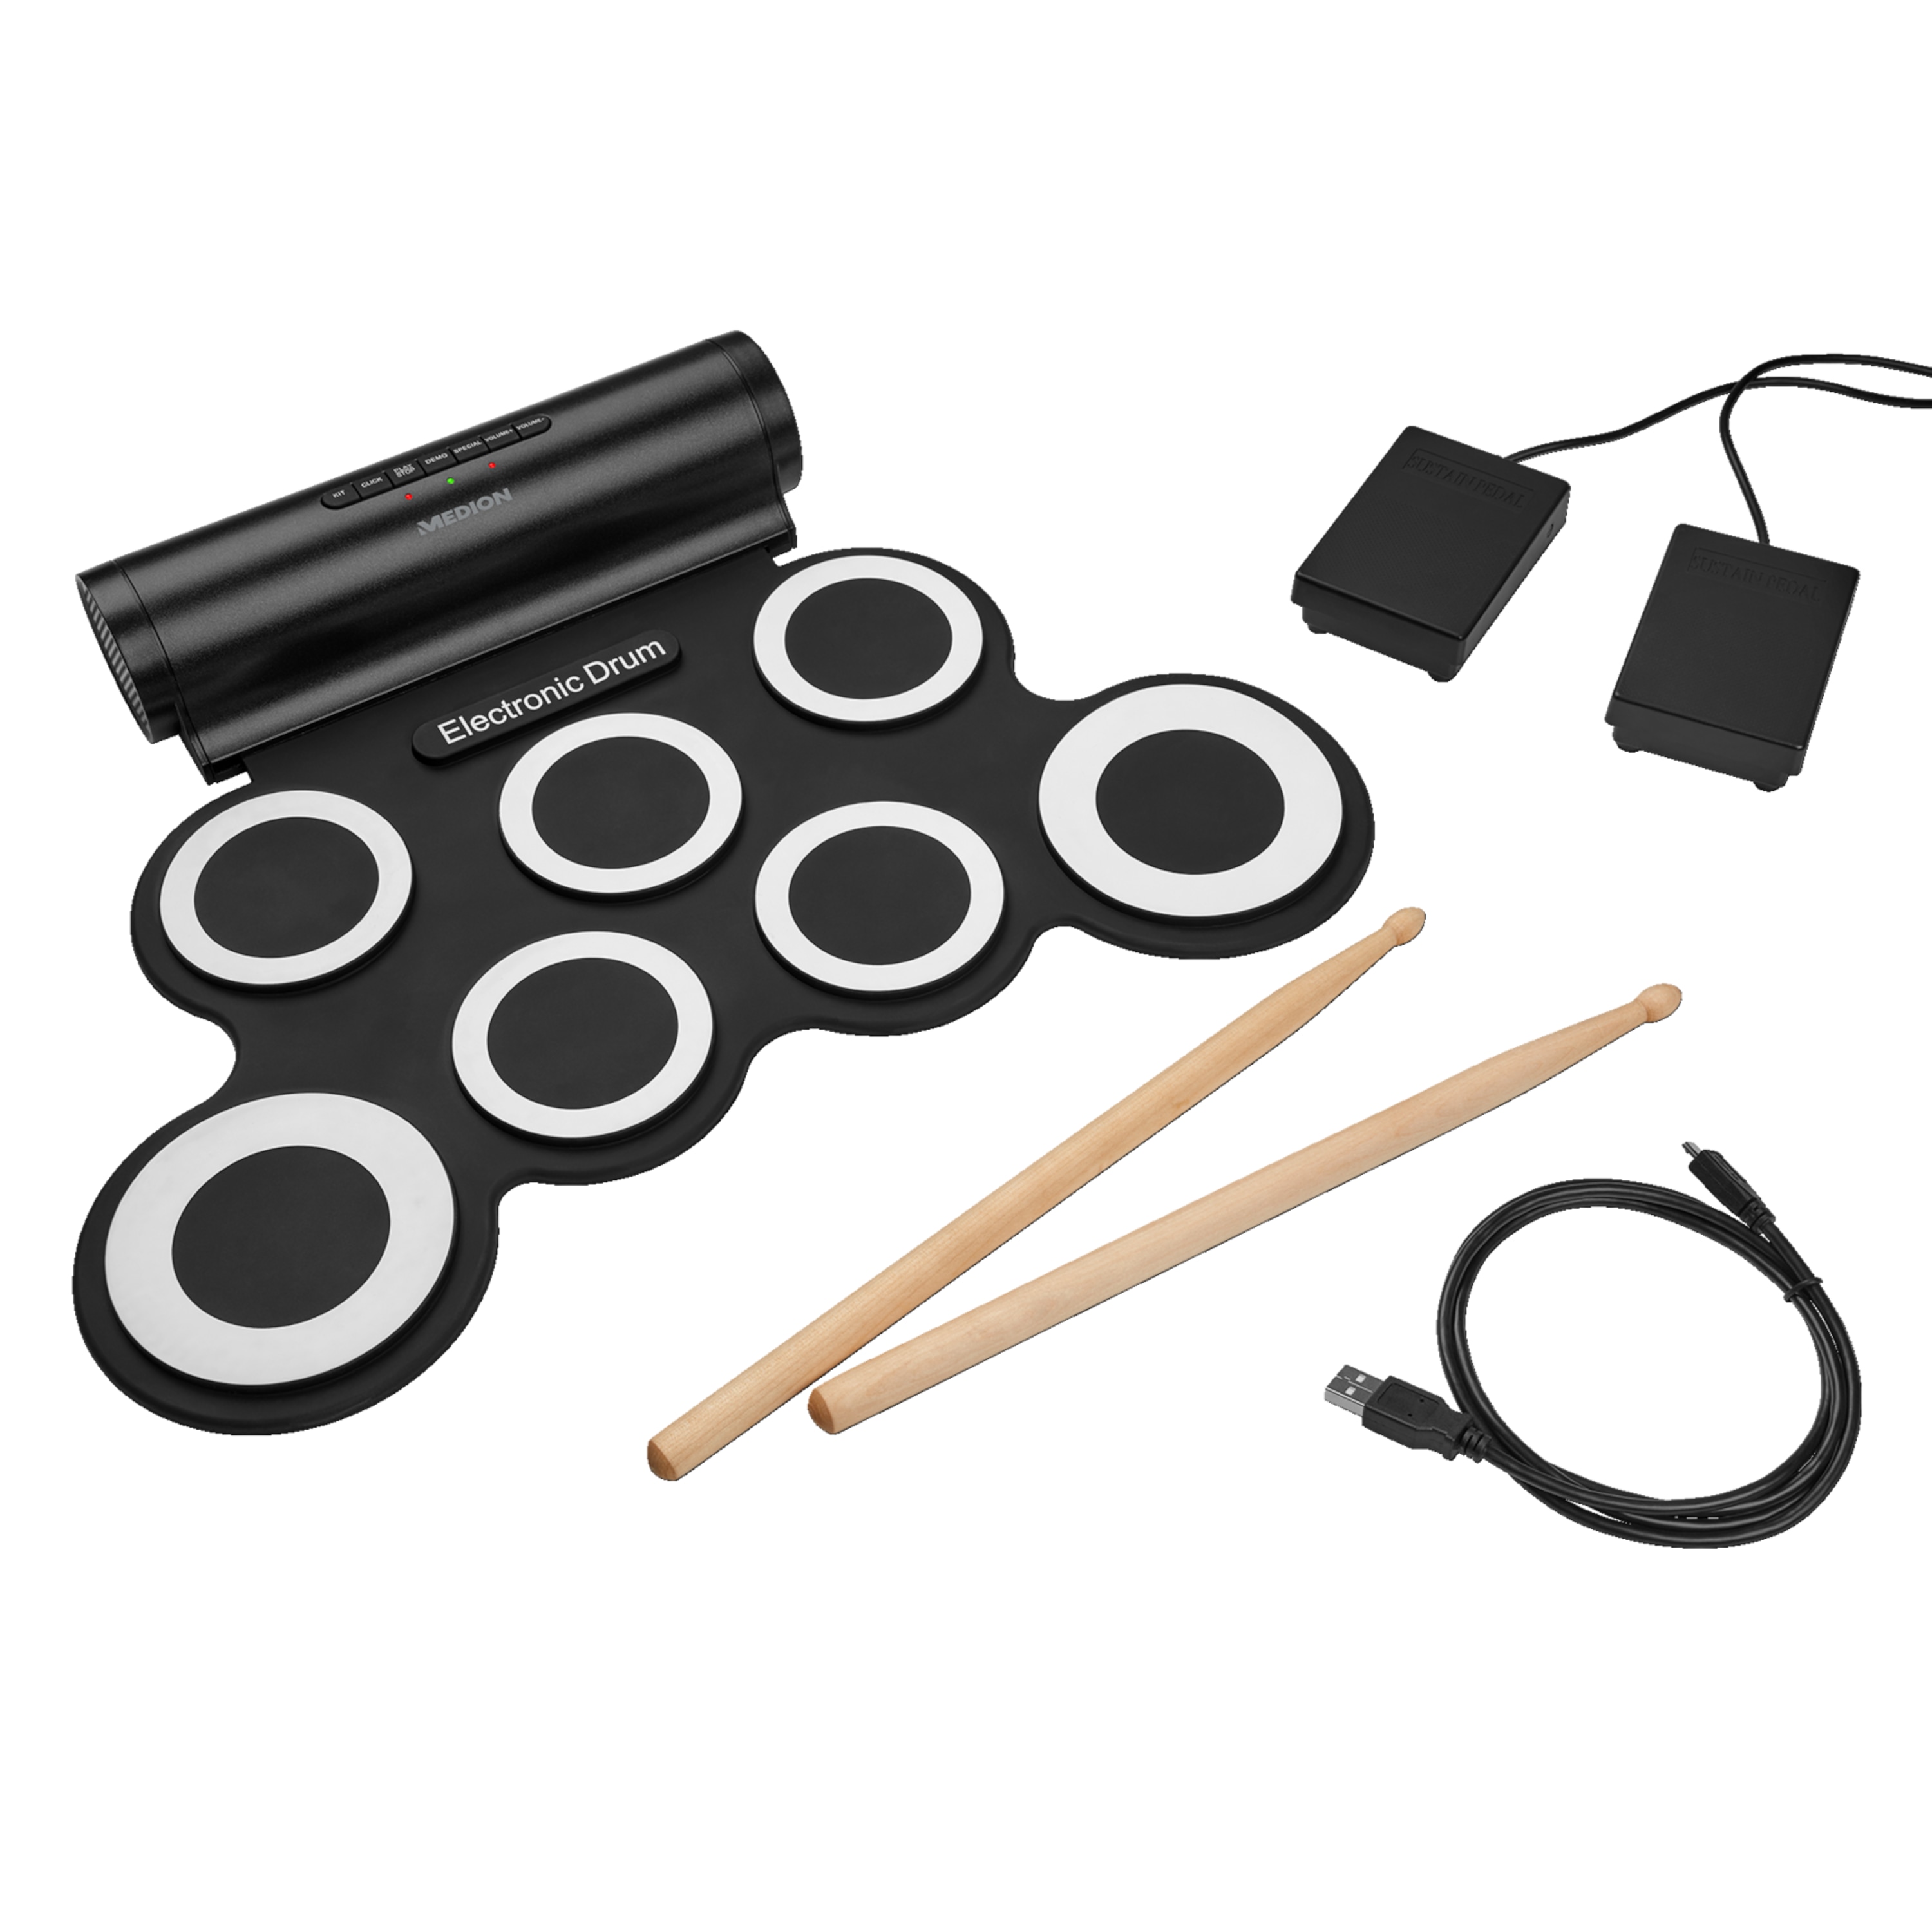 MEDION® LIFE® S67016 Elektronisches Schlagzeug, mobile Rhythmen mit dem Roll-up-Schlagzeug, portables Design, inkl. Drumsticks